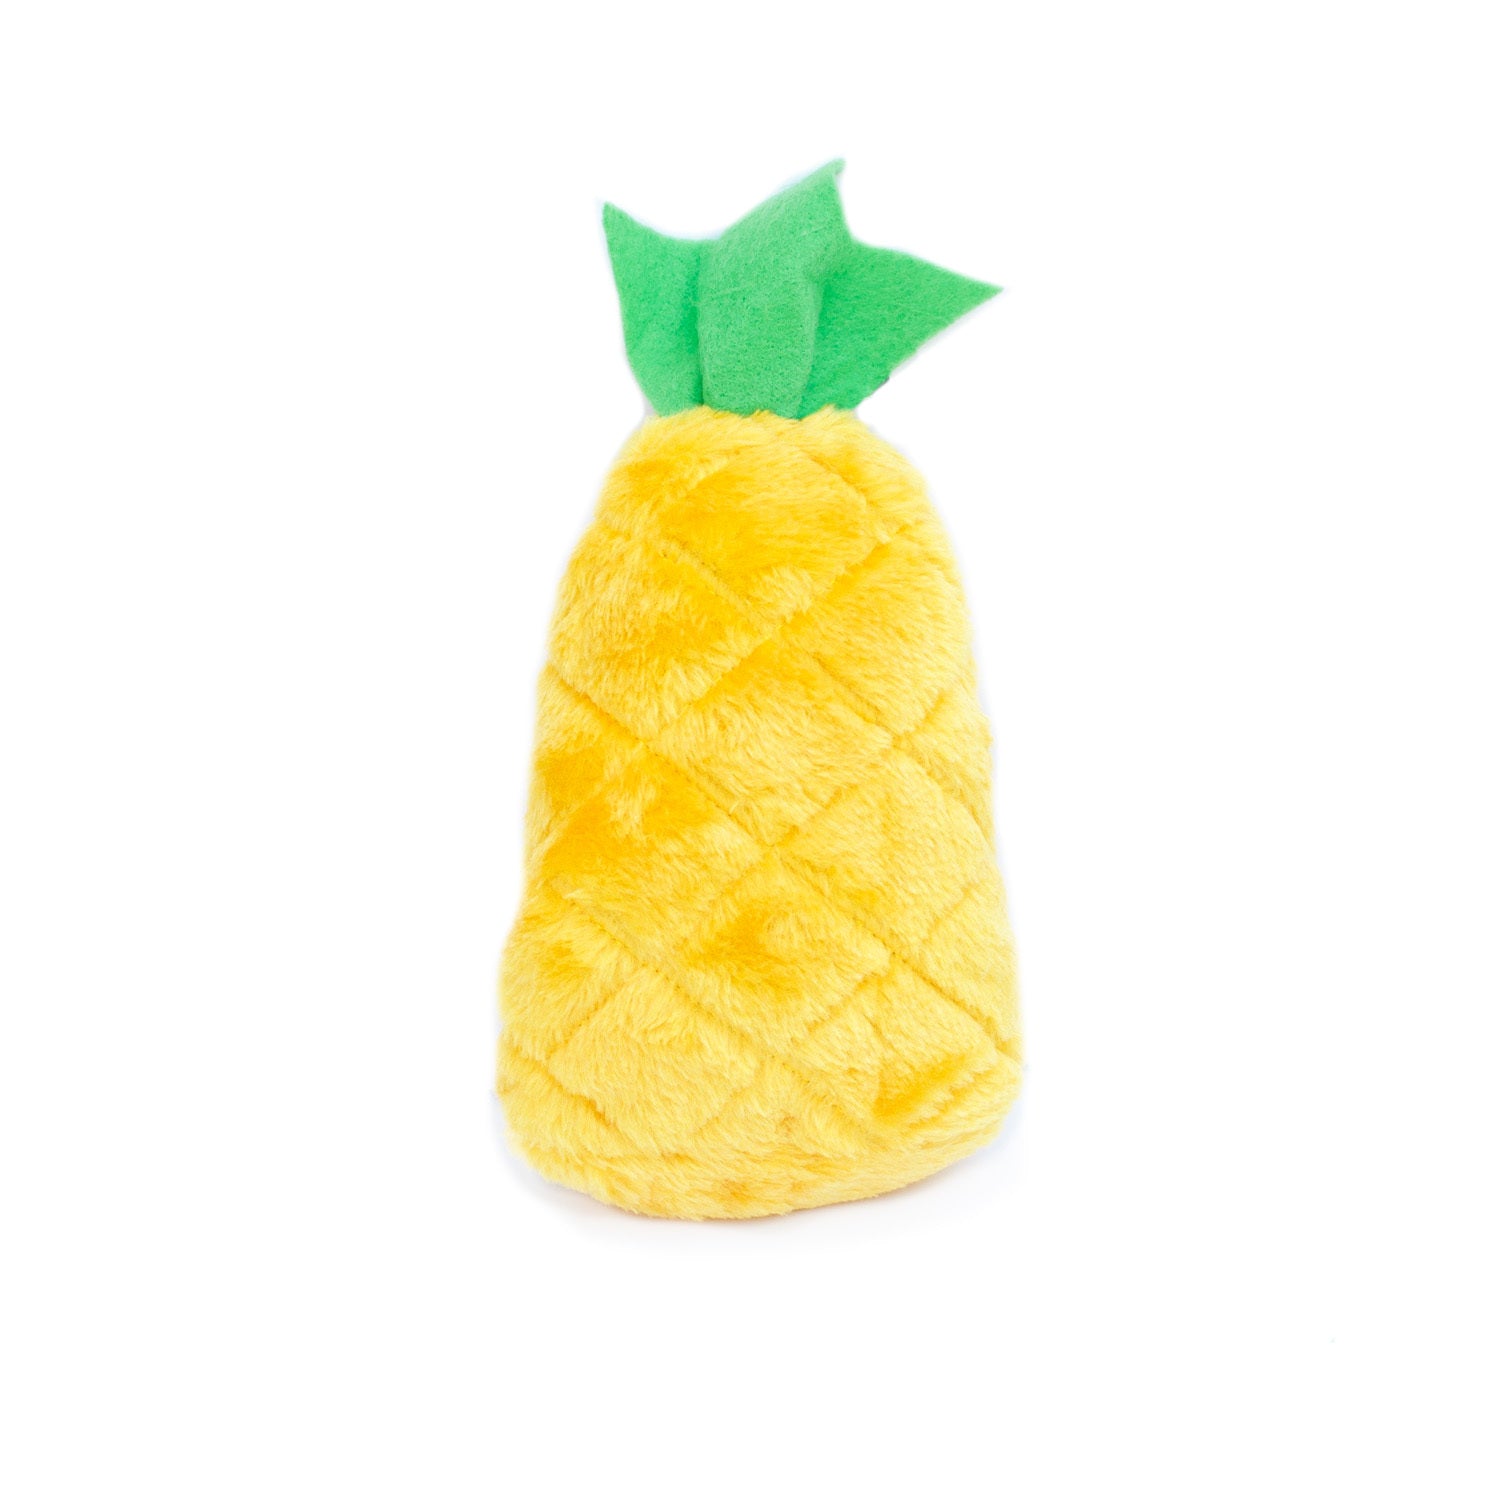 ZIPPY PAWS - NomNomz Pineapple Plush Toy